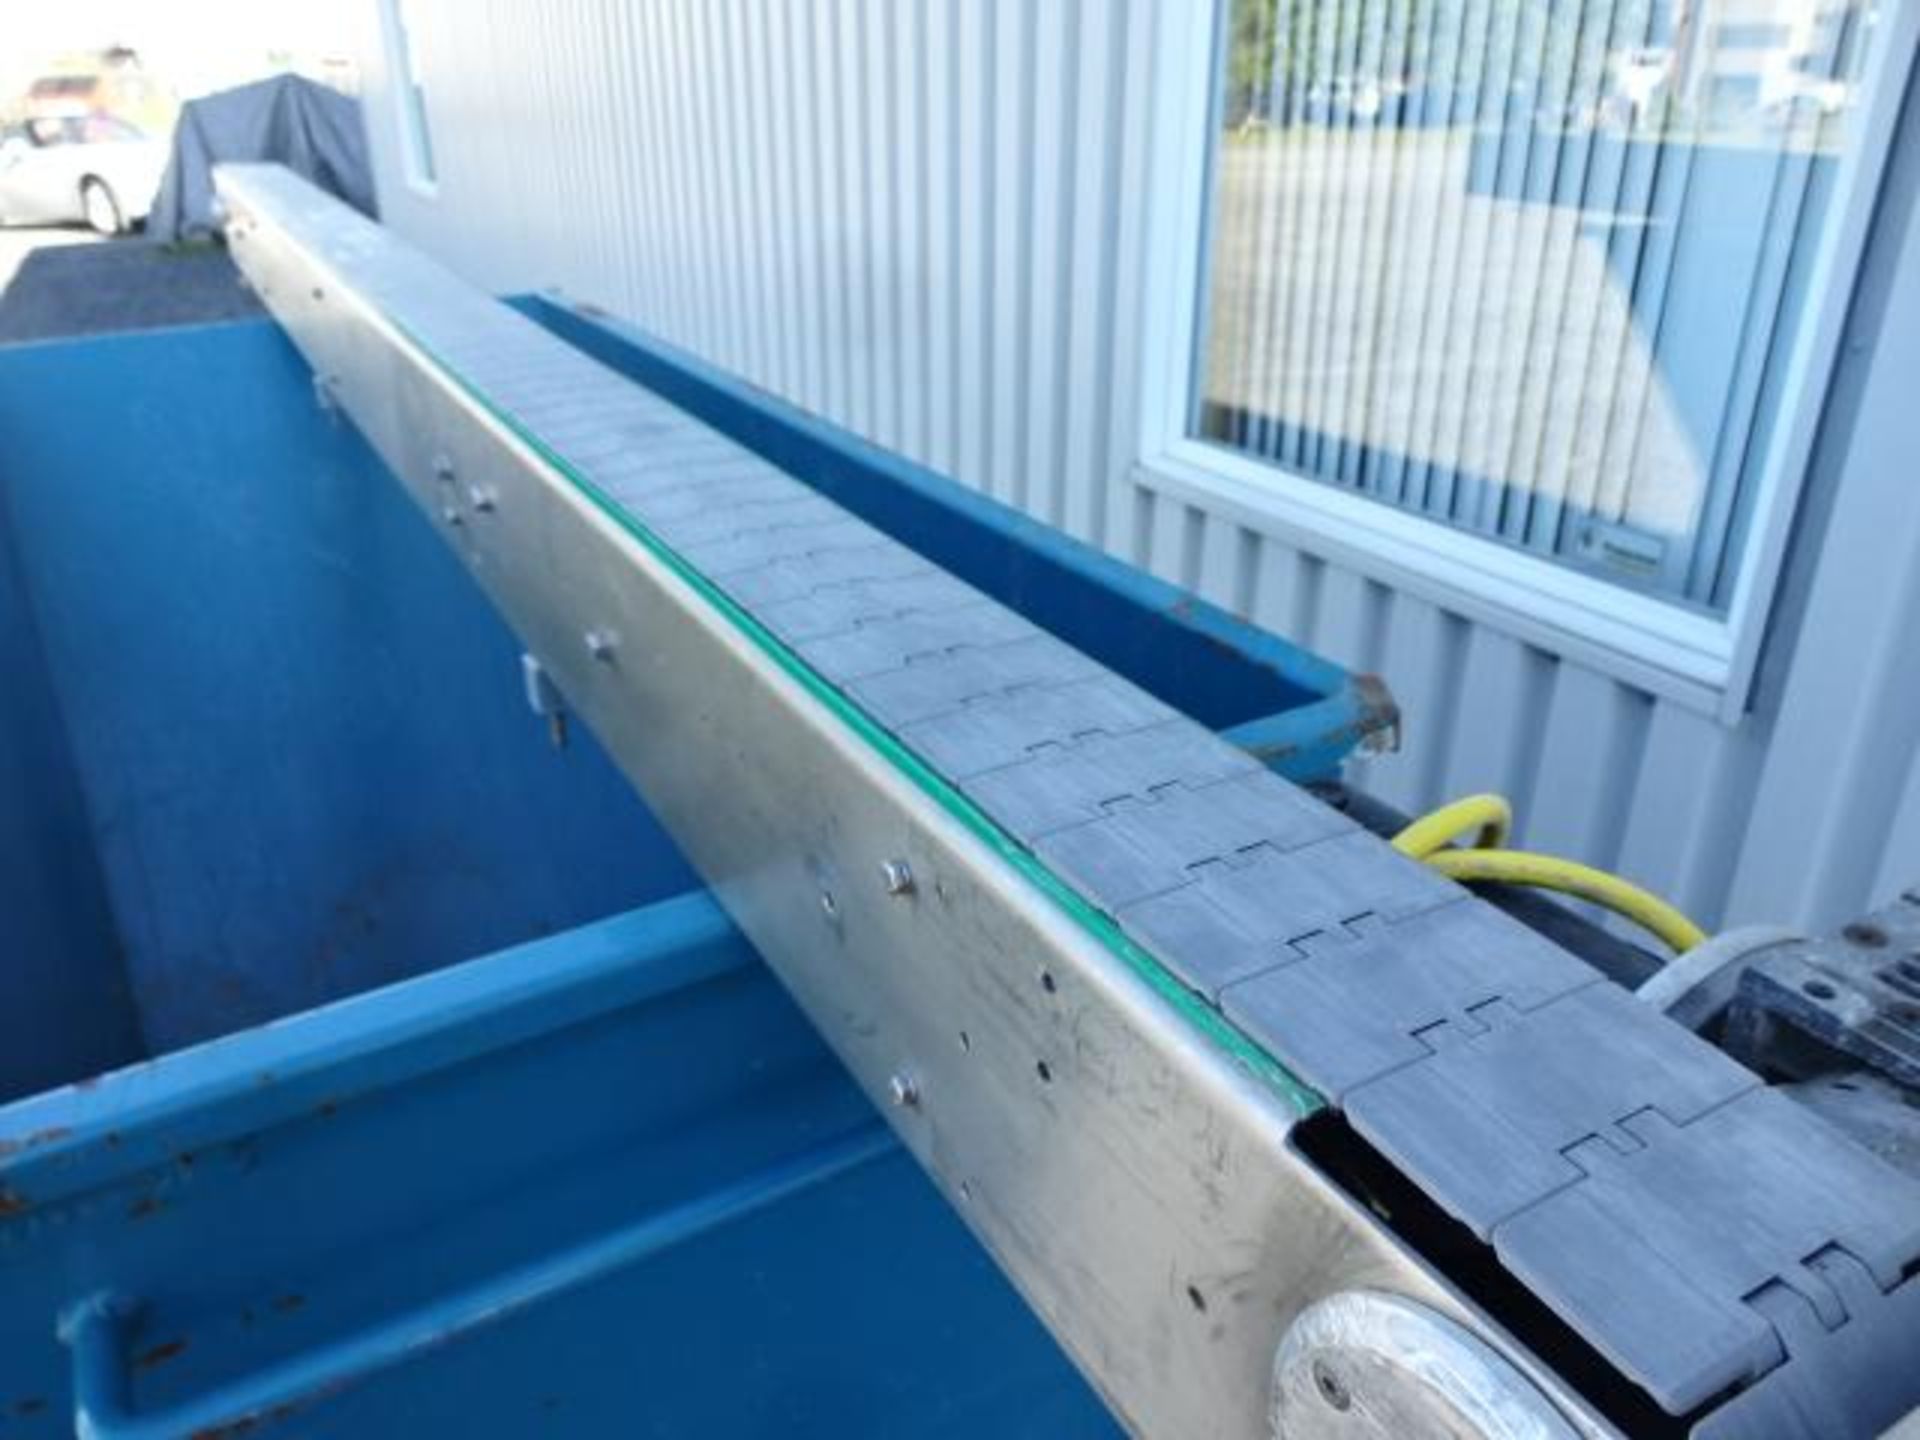 Convoyeur en inox - Stainless steel conveyor - Image 2 of 7